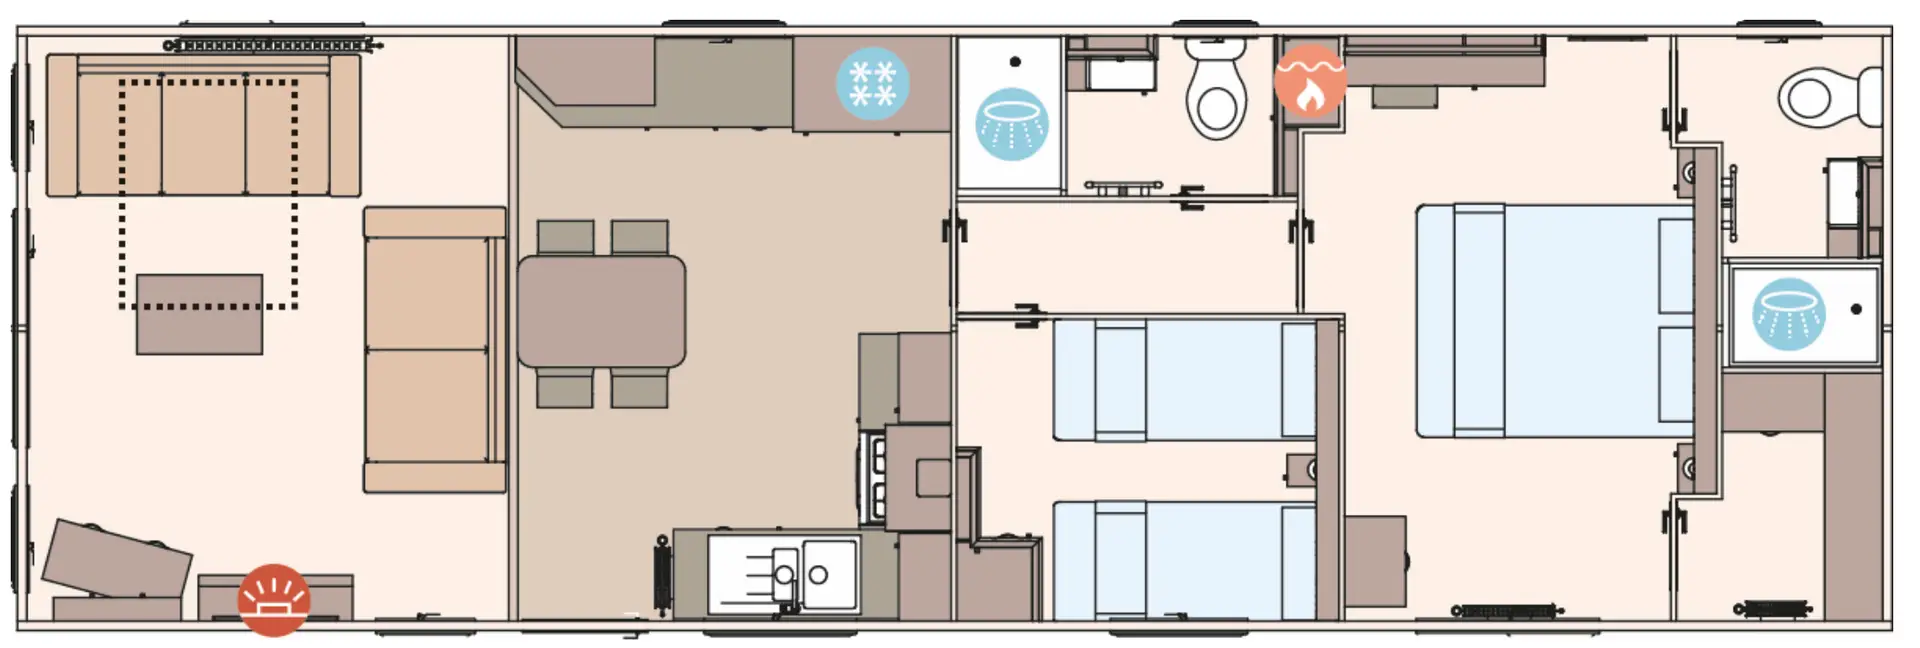 40x13 2 Bedroom floor Plan